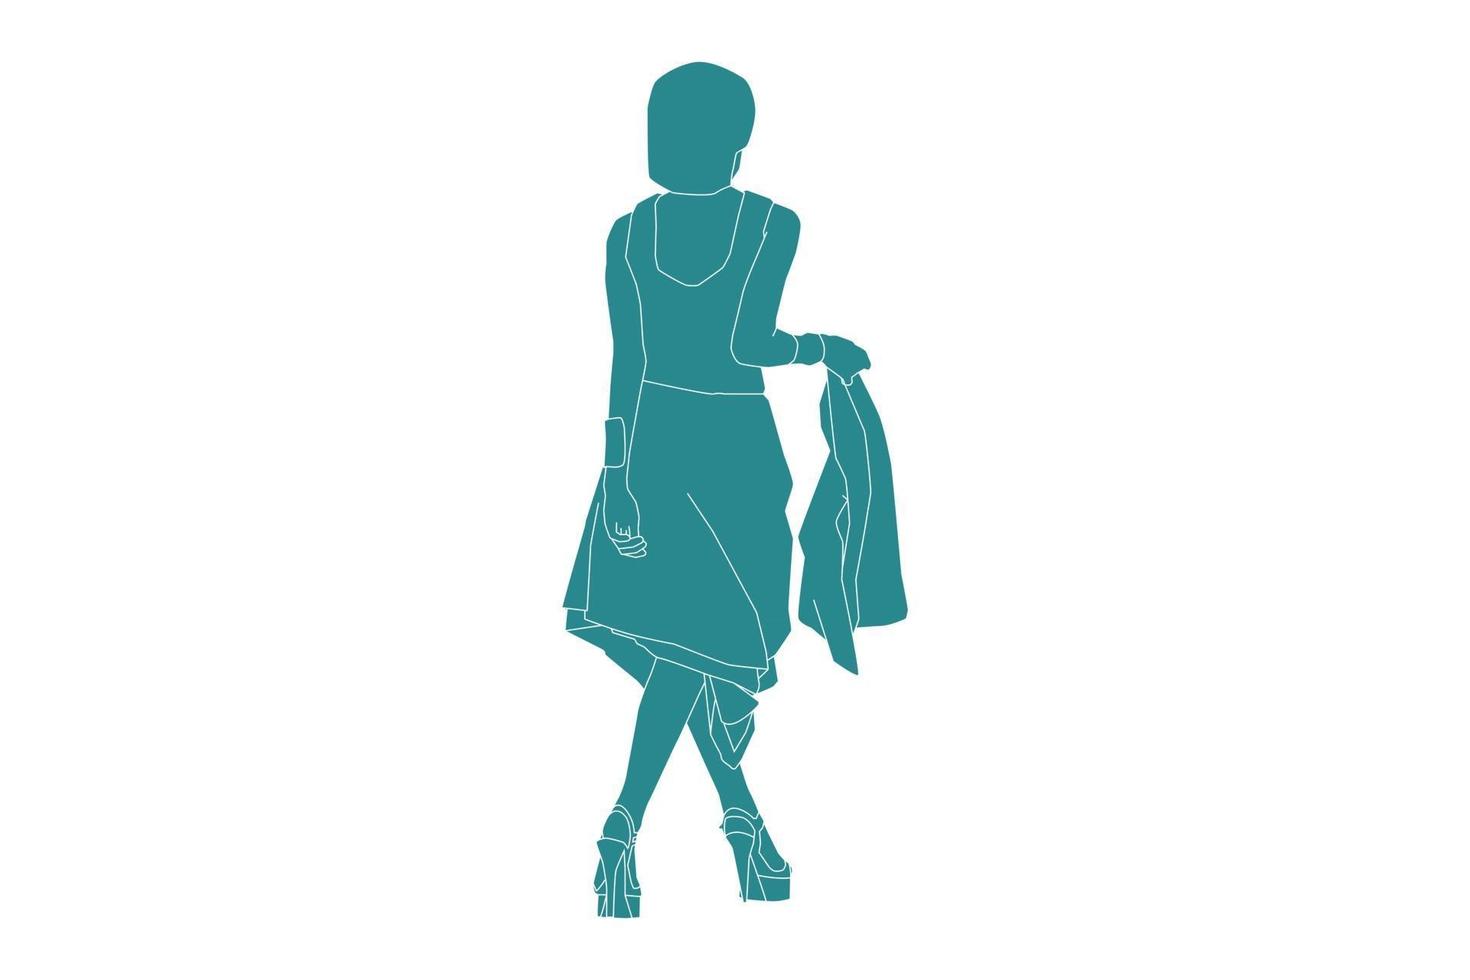 ilustração em vetor de mulher elegante posando na passarela, estilo simples com contorno